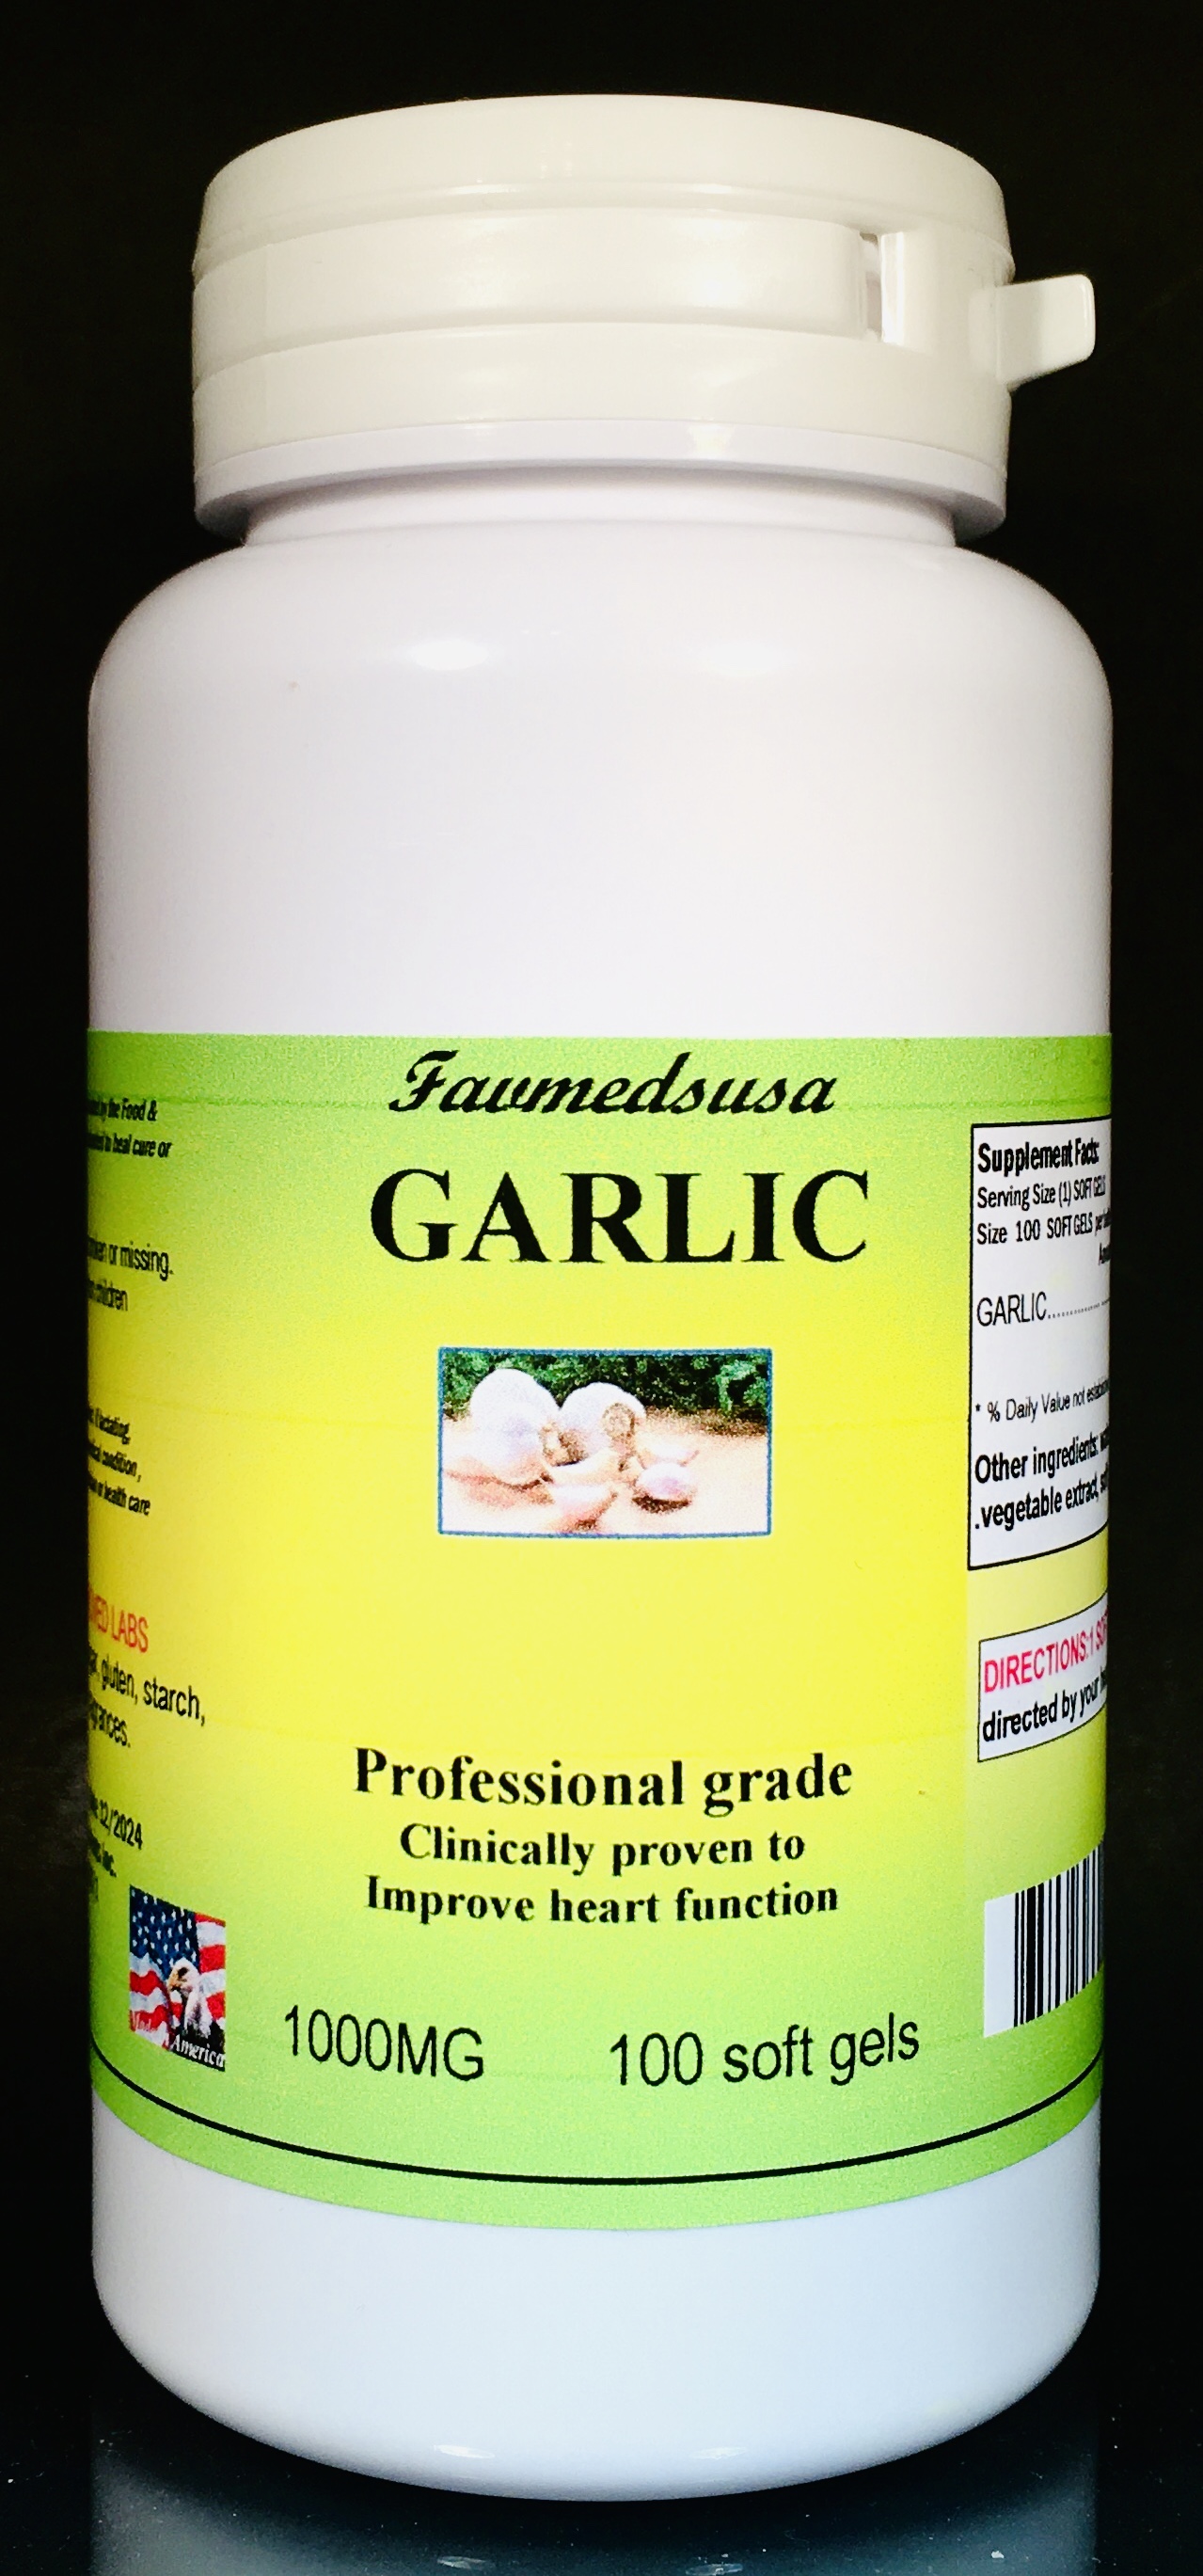 Garlic 1000mg - 100 soft gels